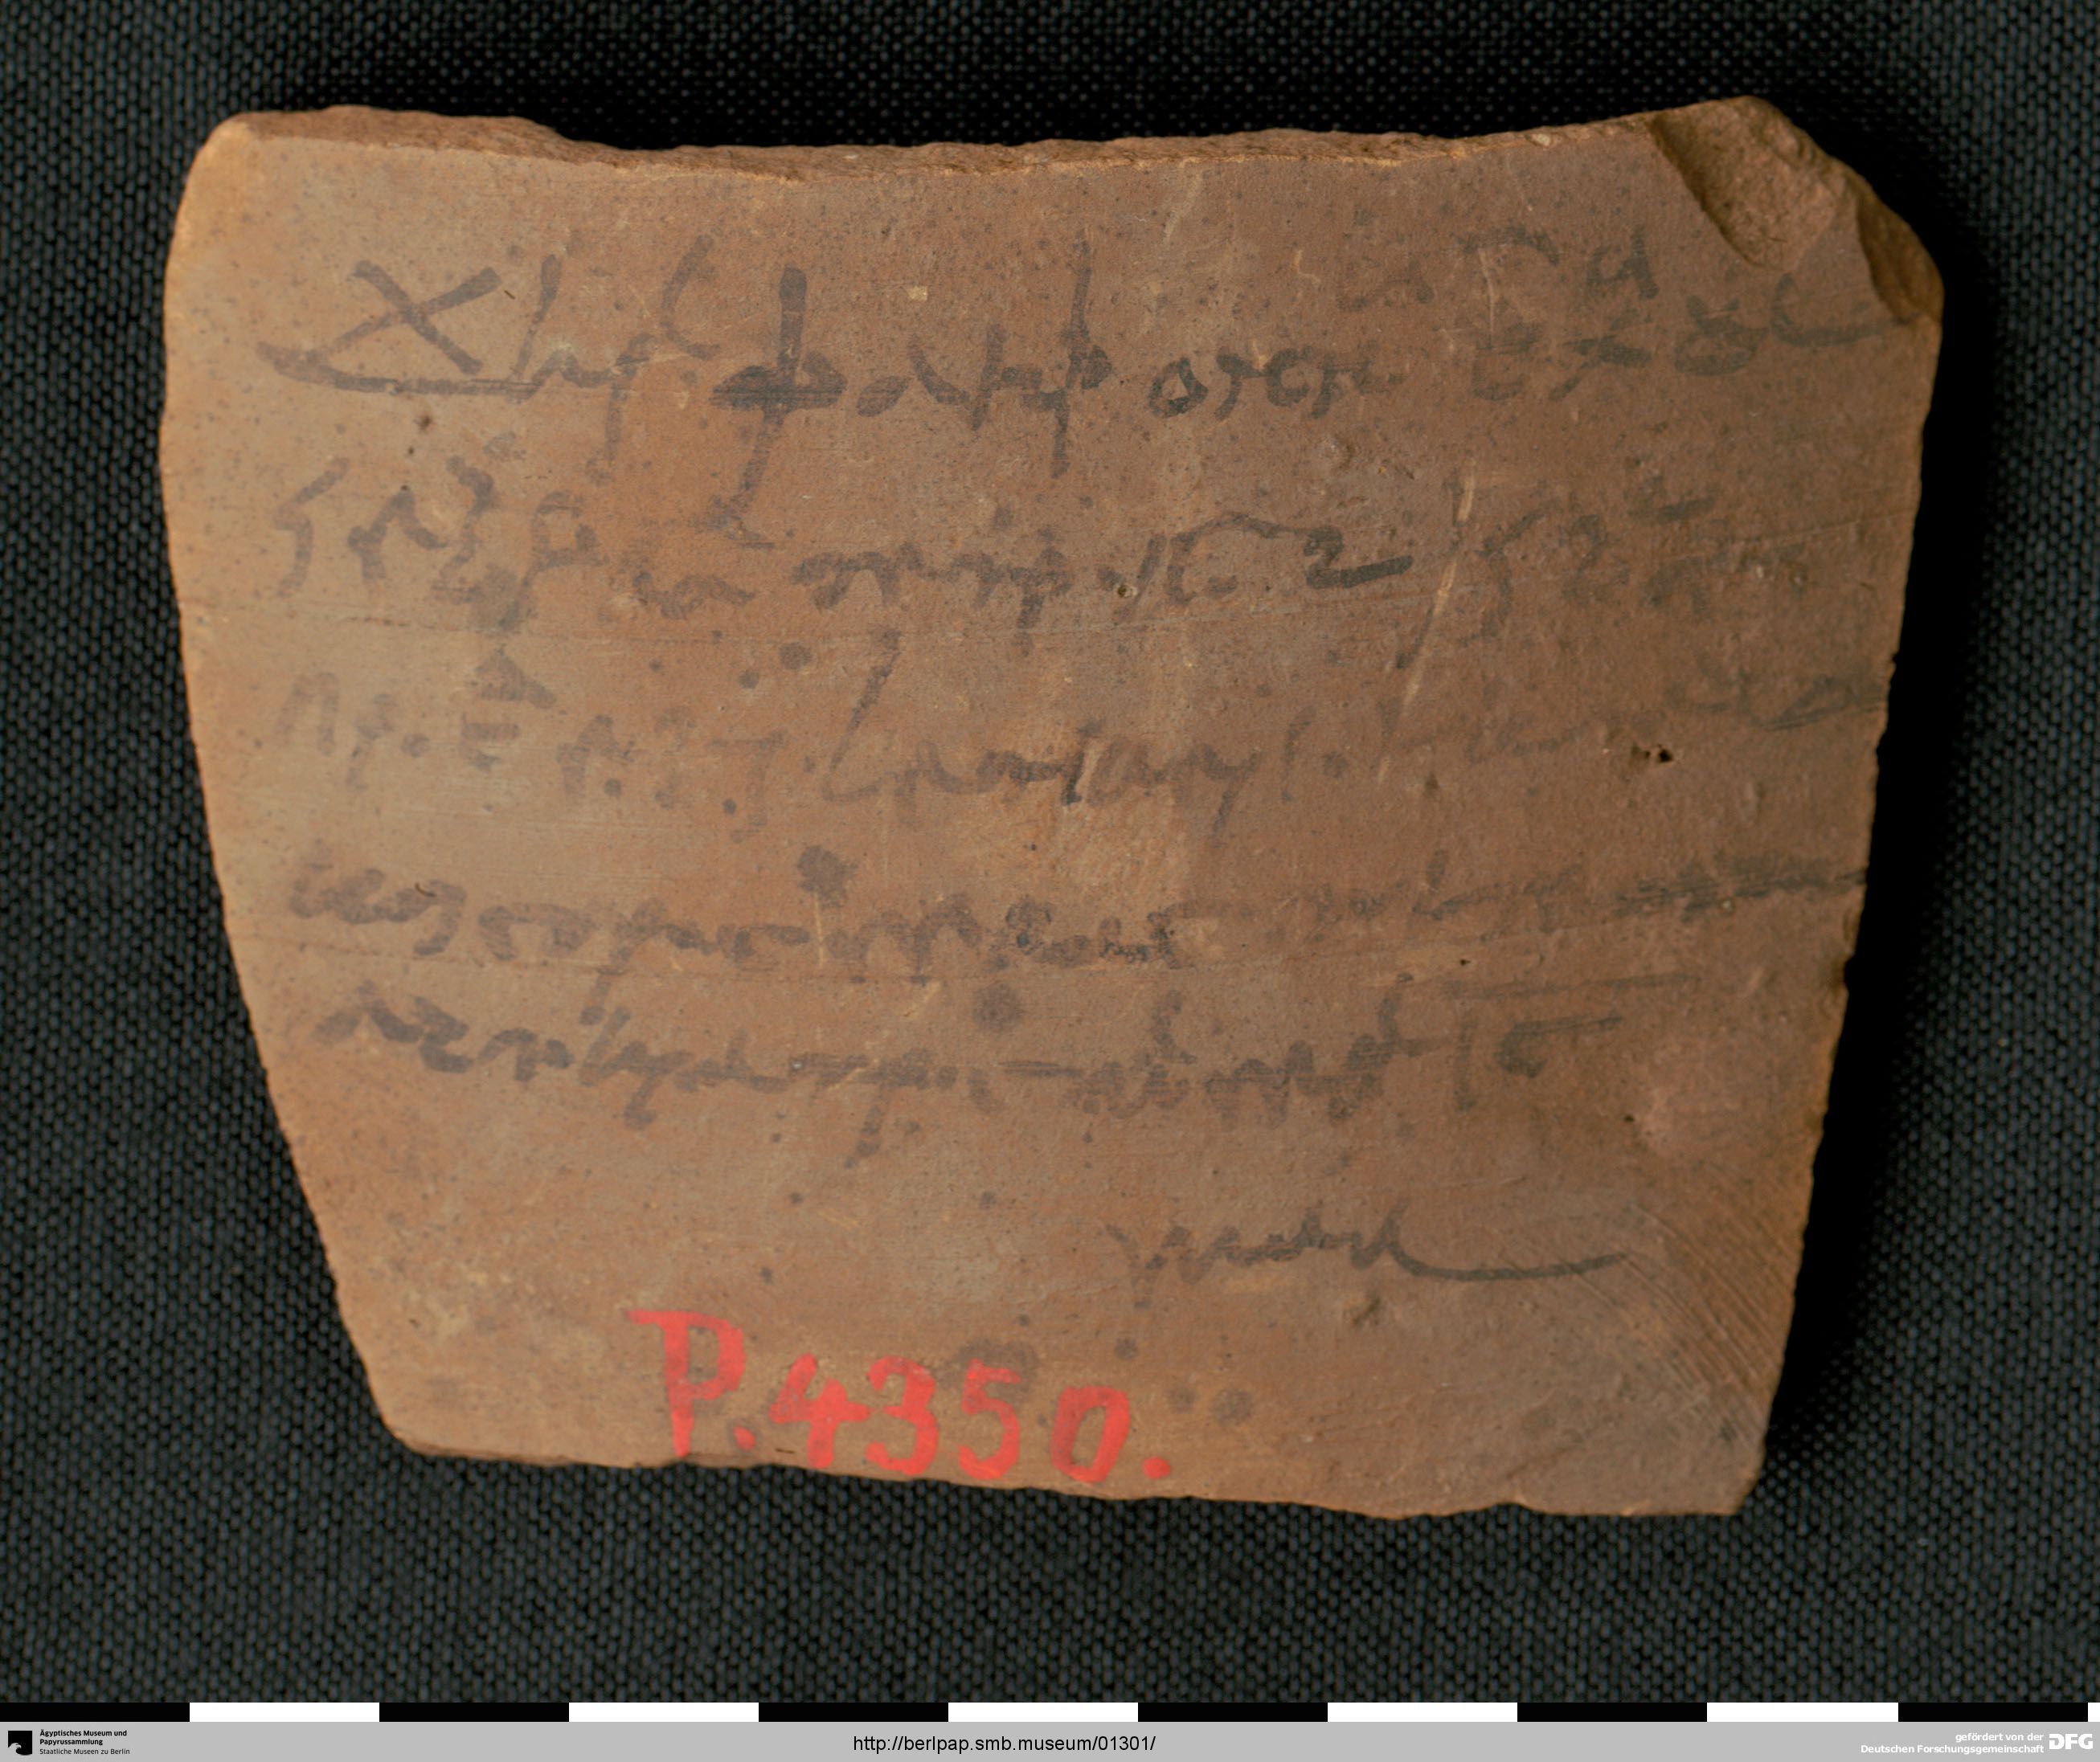 https://berlpap.smb.museum/Original/P_04350_S1_001.jpg (Ägyptisches Museum und Papyrussammlung, Staatliche Museen zu Berlin CC BY-NC-SA)